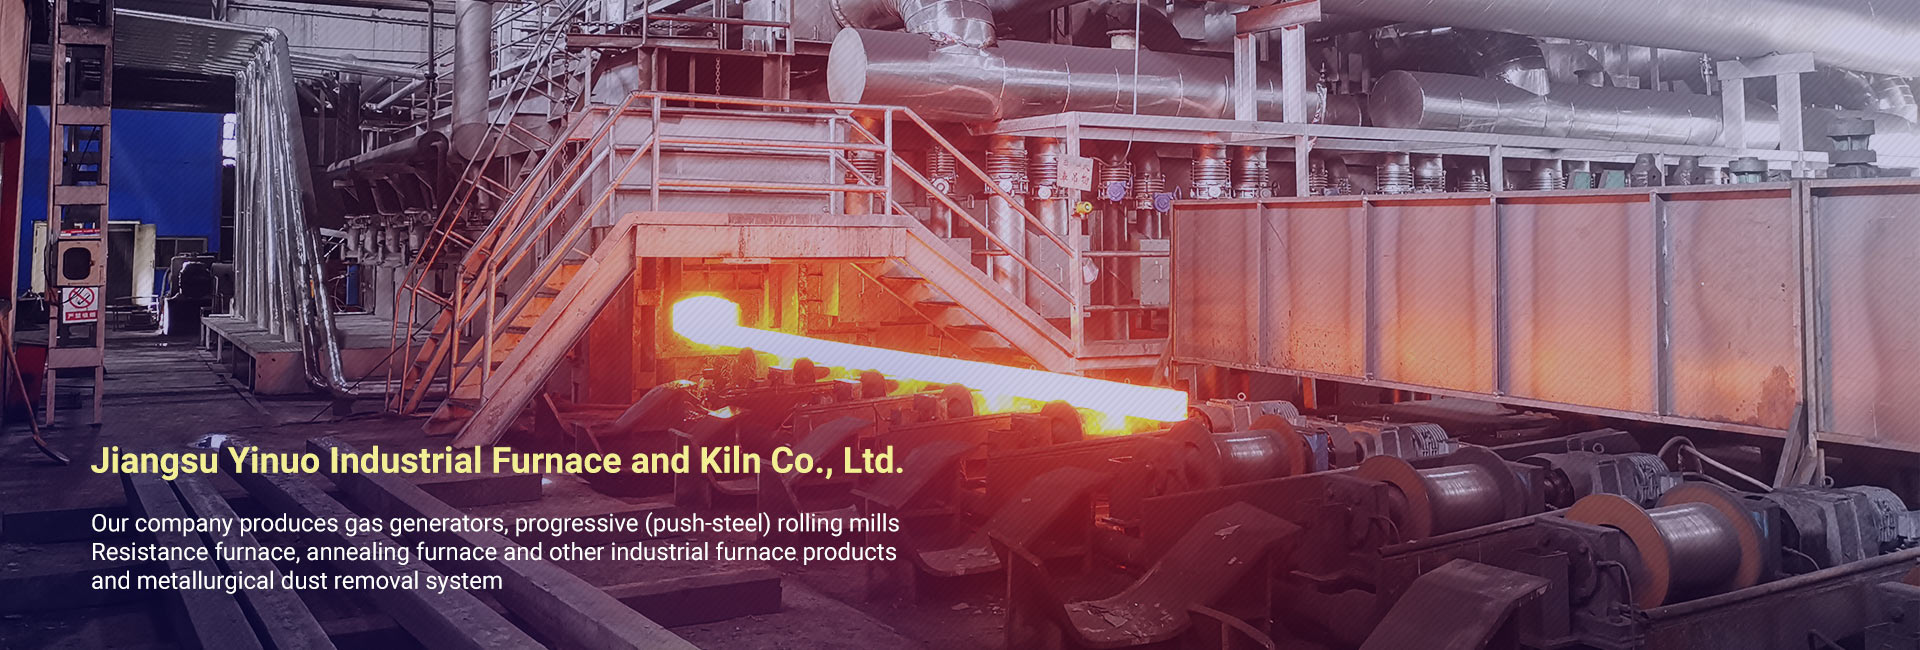 Jiangsu Yinuo Industrial Furnace and Kiln Co., Ltd.